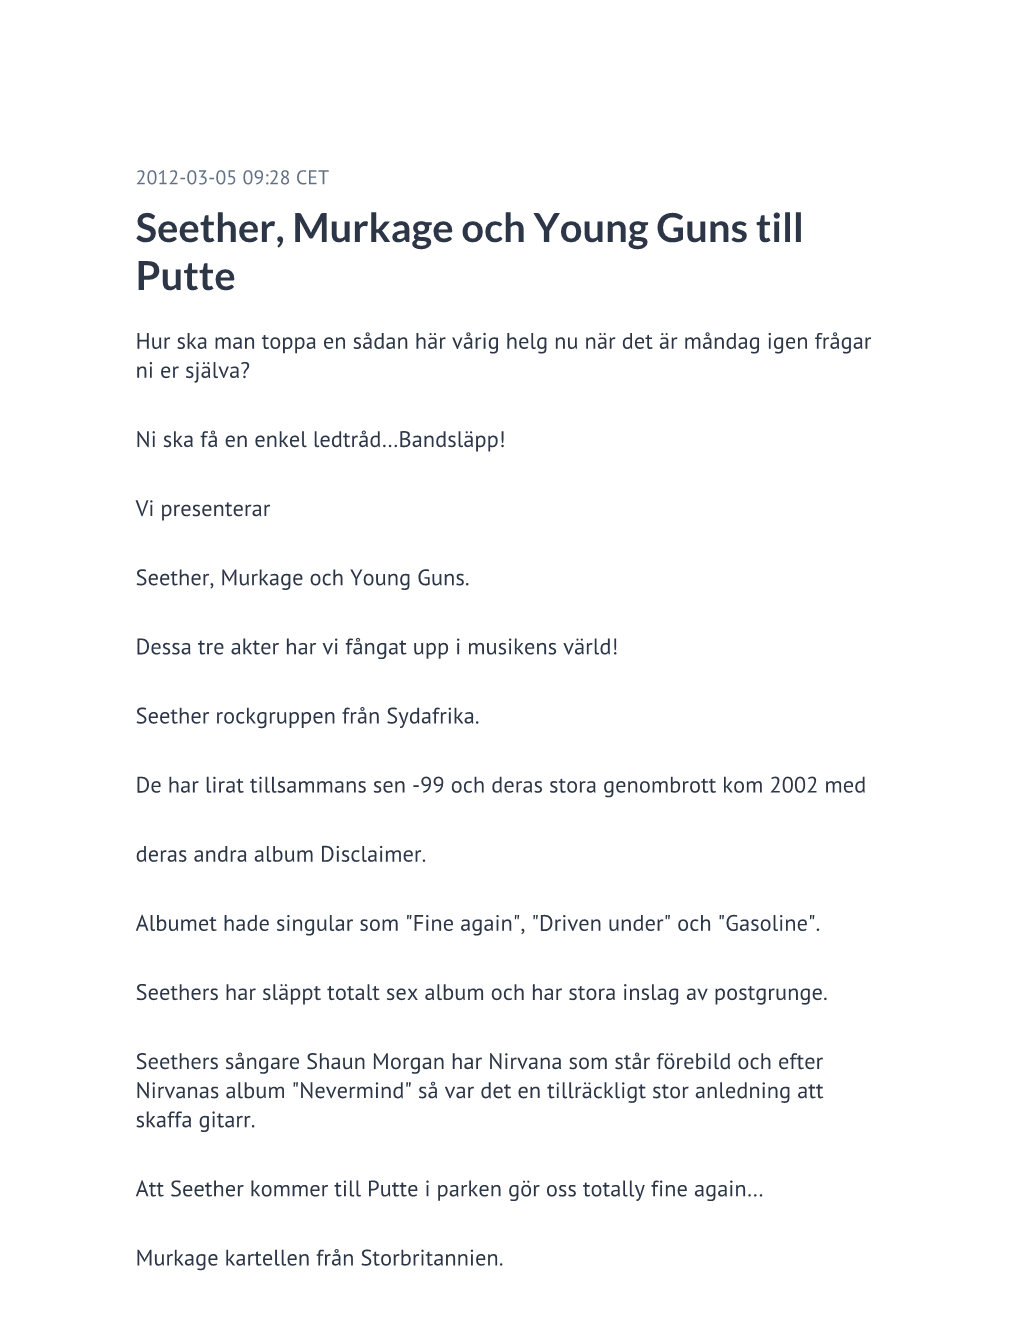 Seether, Murkage Och Young Guns Till Putte